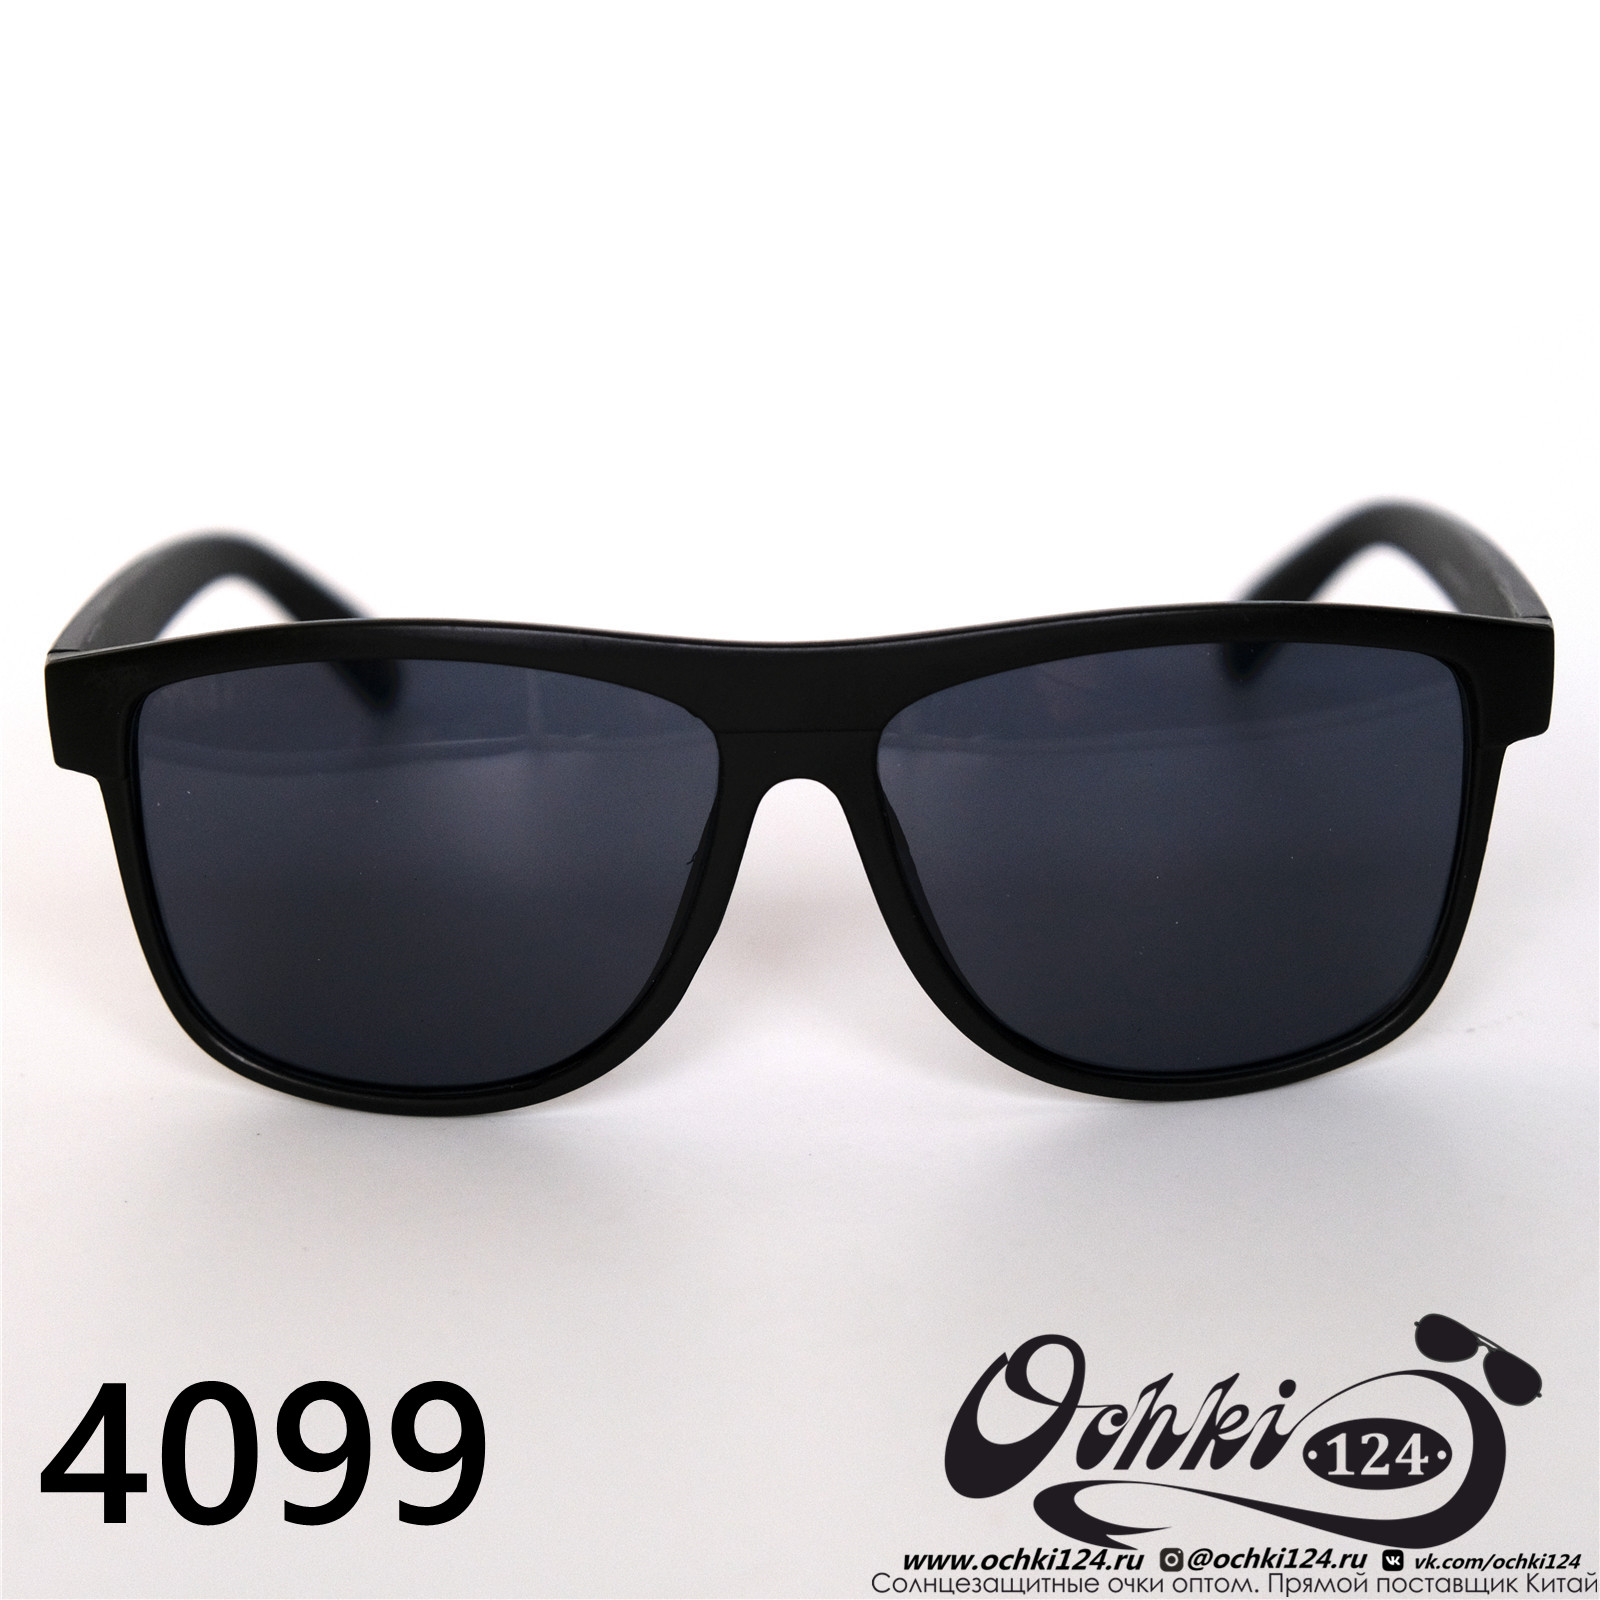  Солнцезащитные очки картинка 2022 Мужские Стандартные Materice 4099-4 